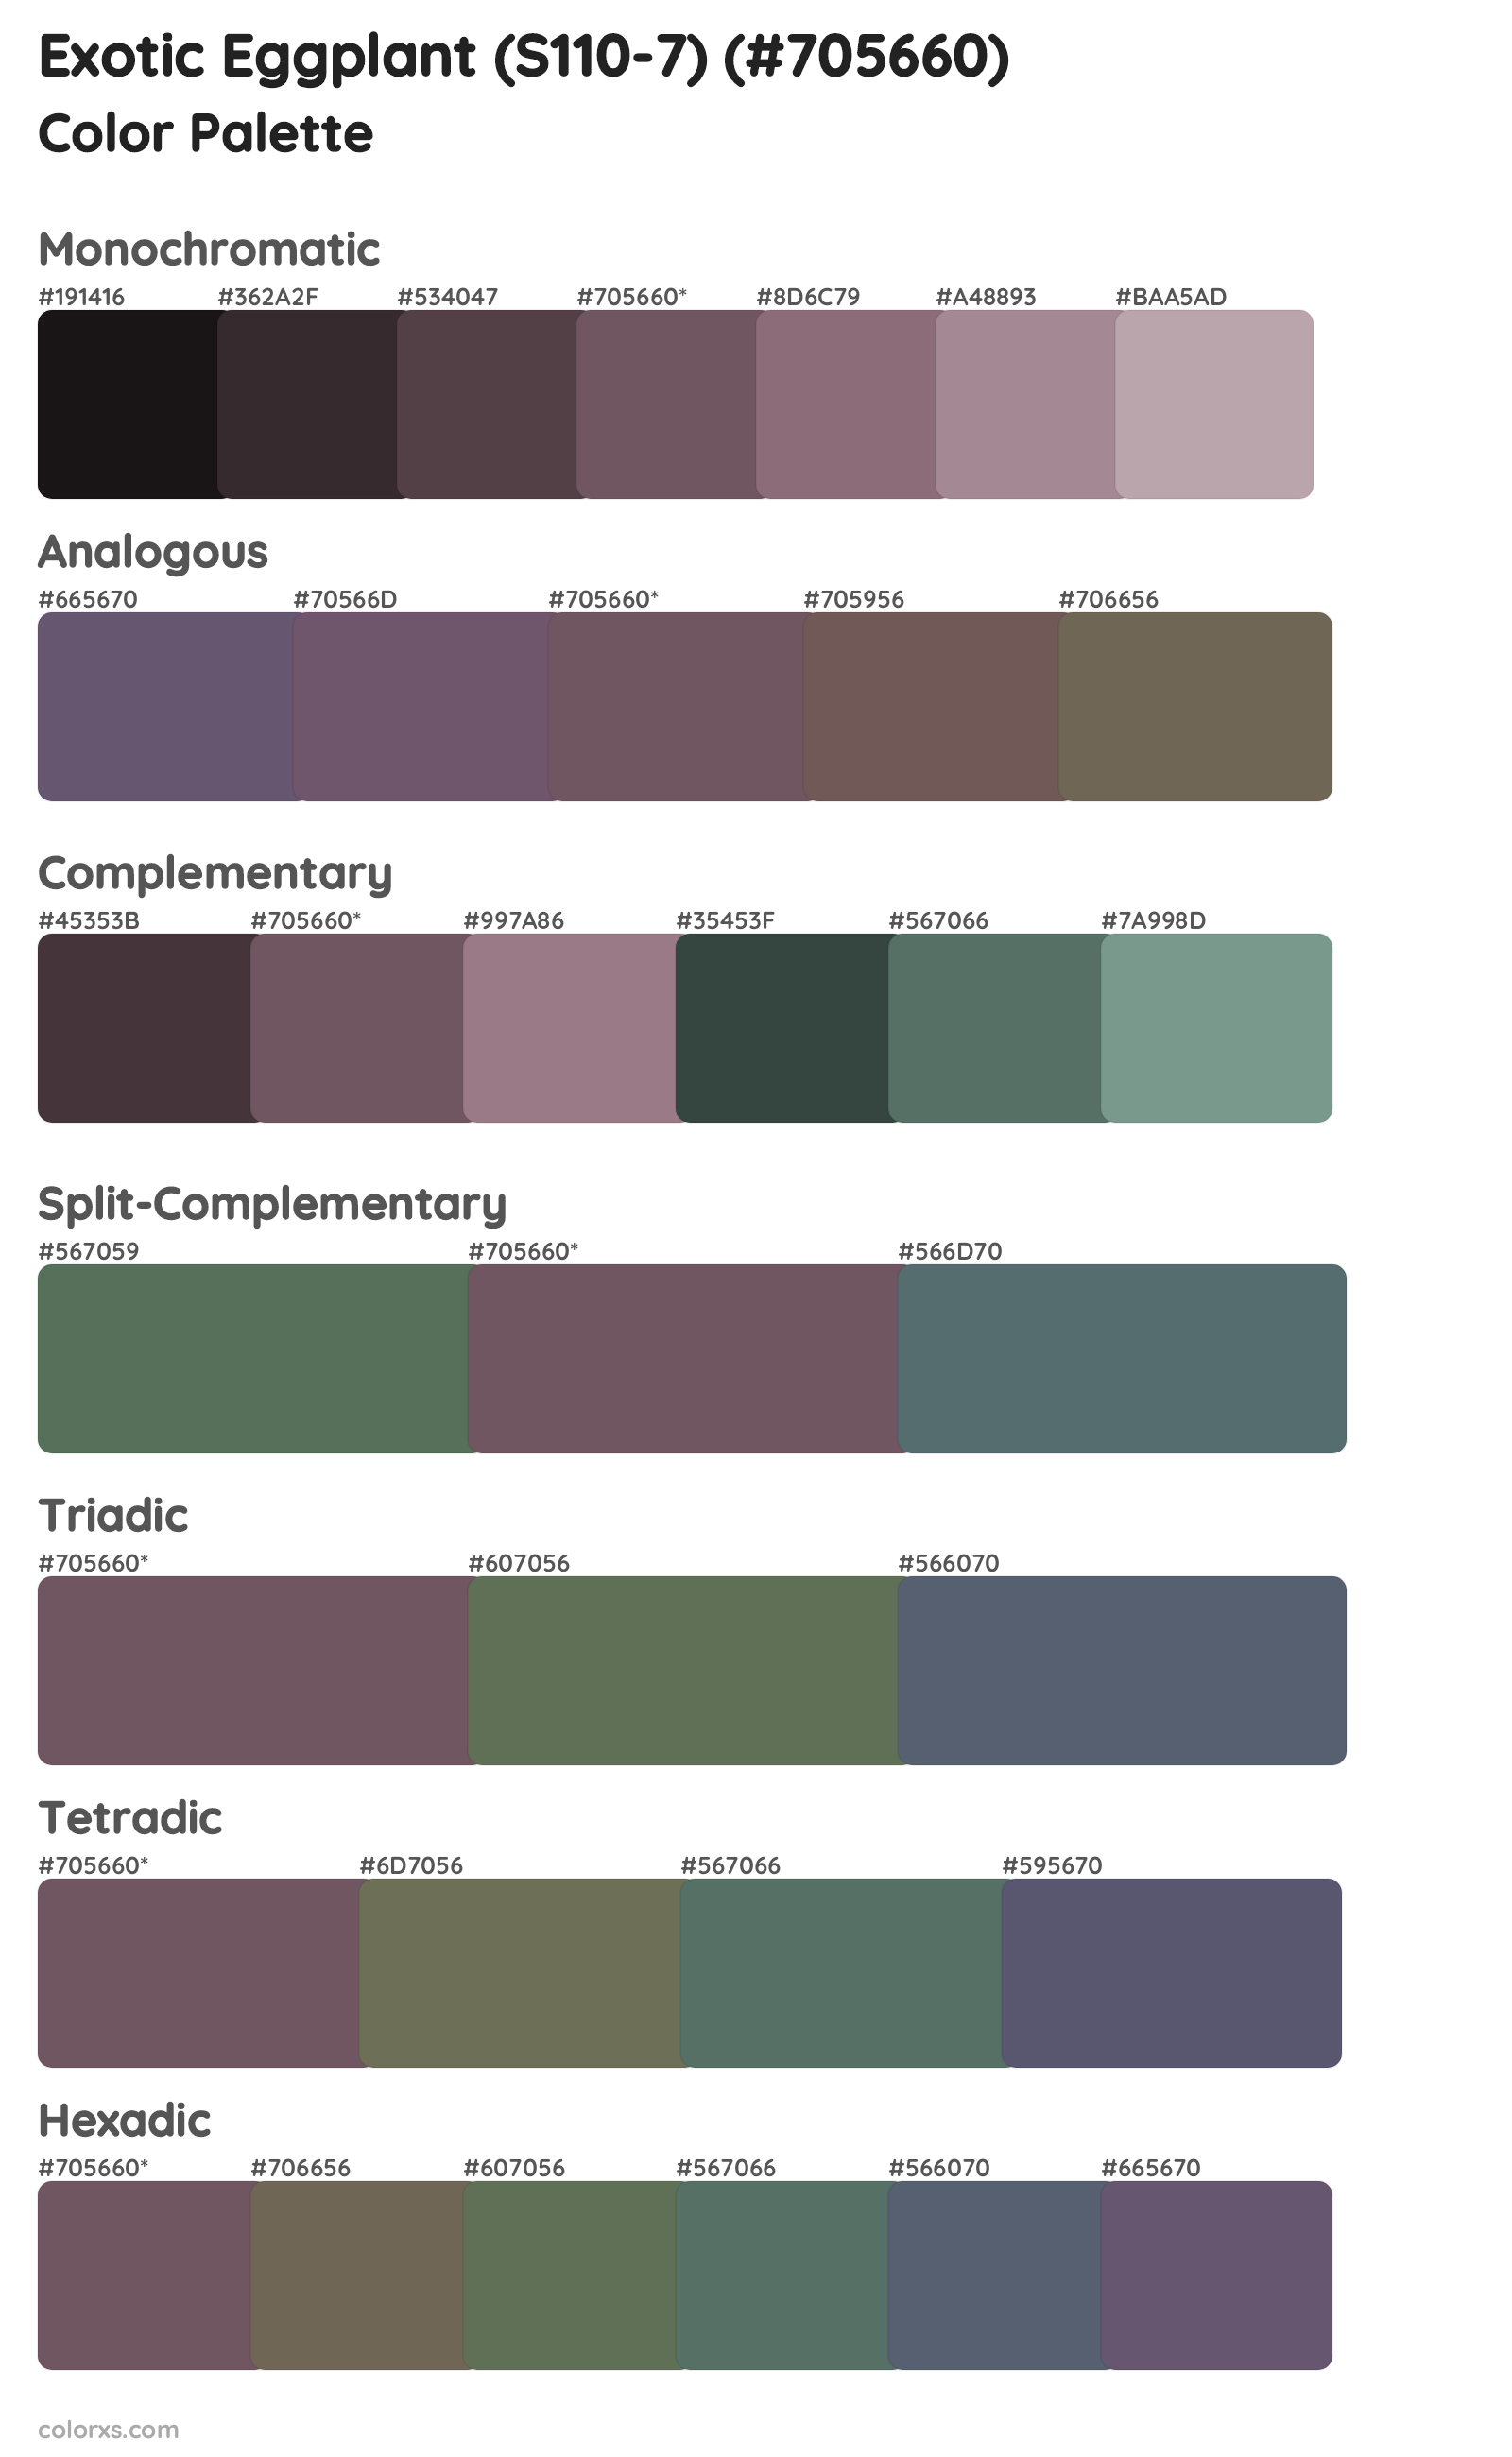 Exotic Eggplant (S110-7) Color Scheme Palettes